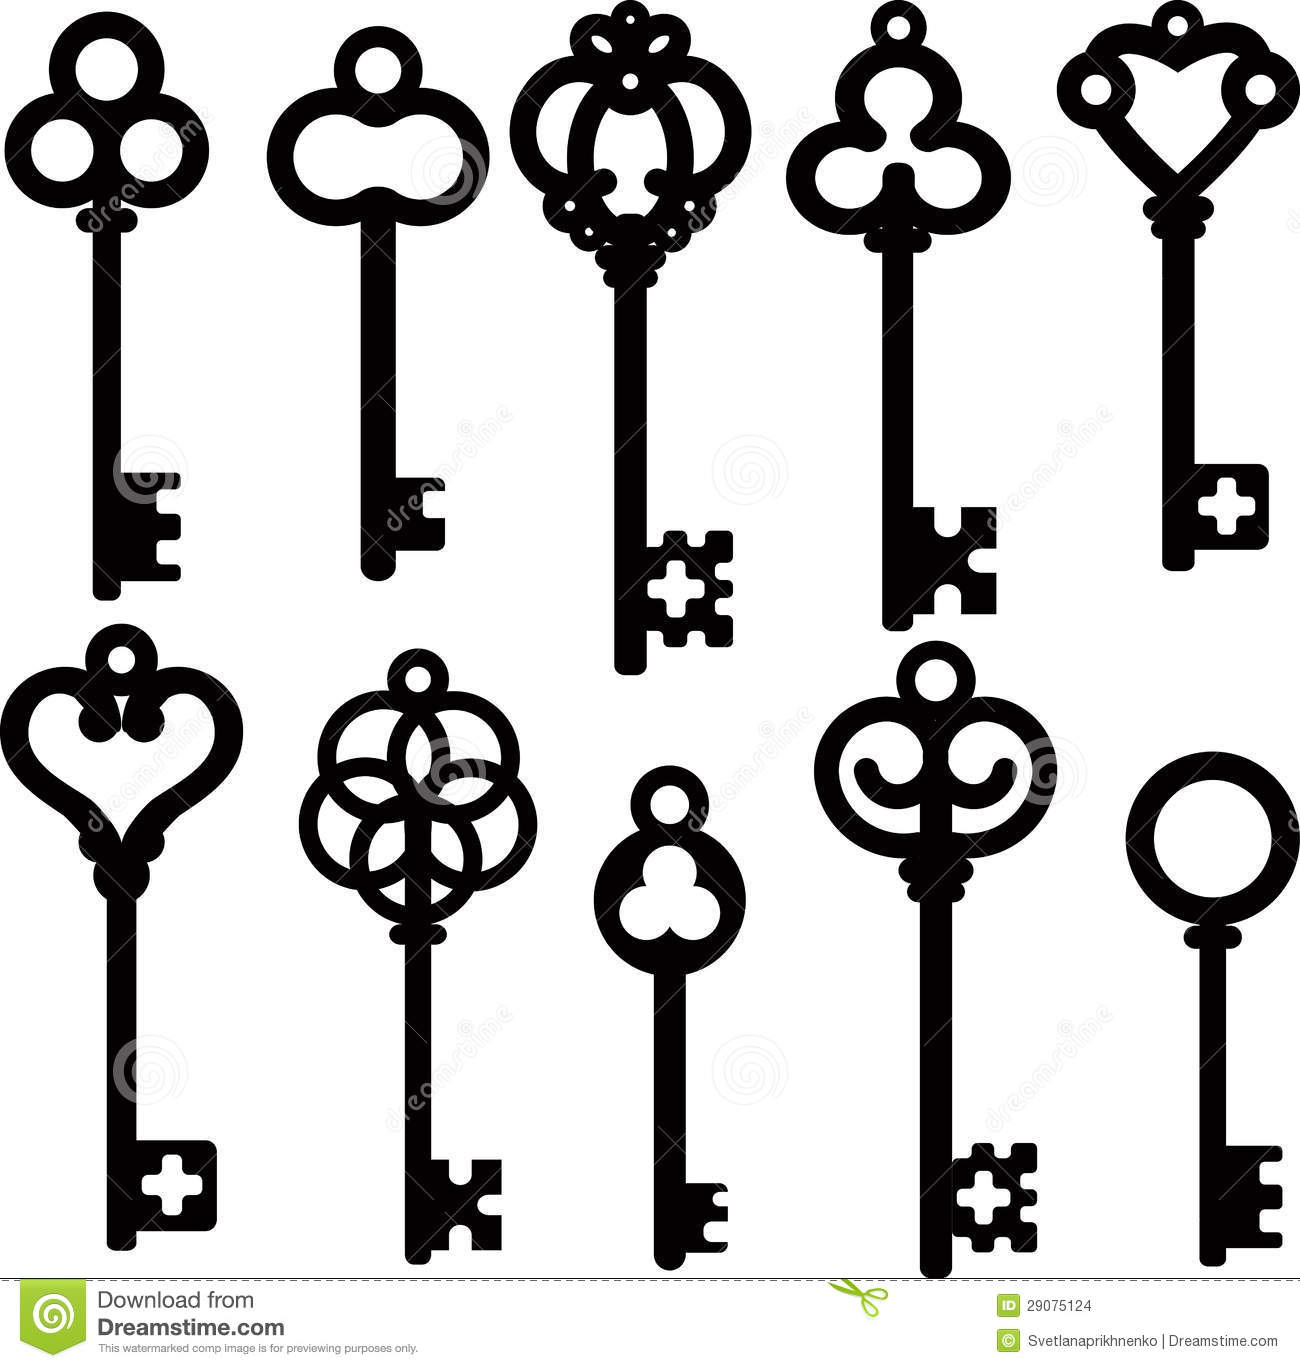 Skeleton key clip art clipart